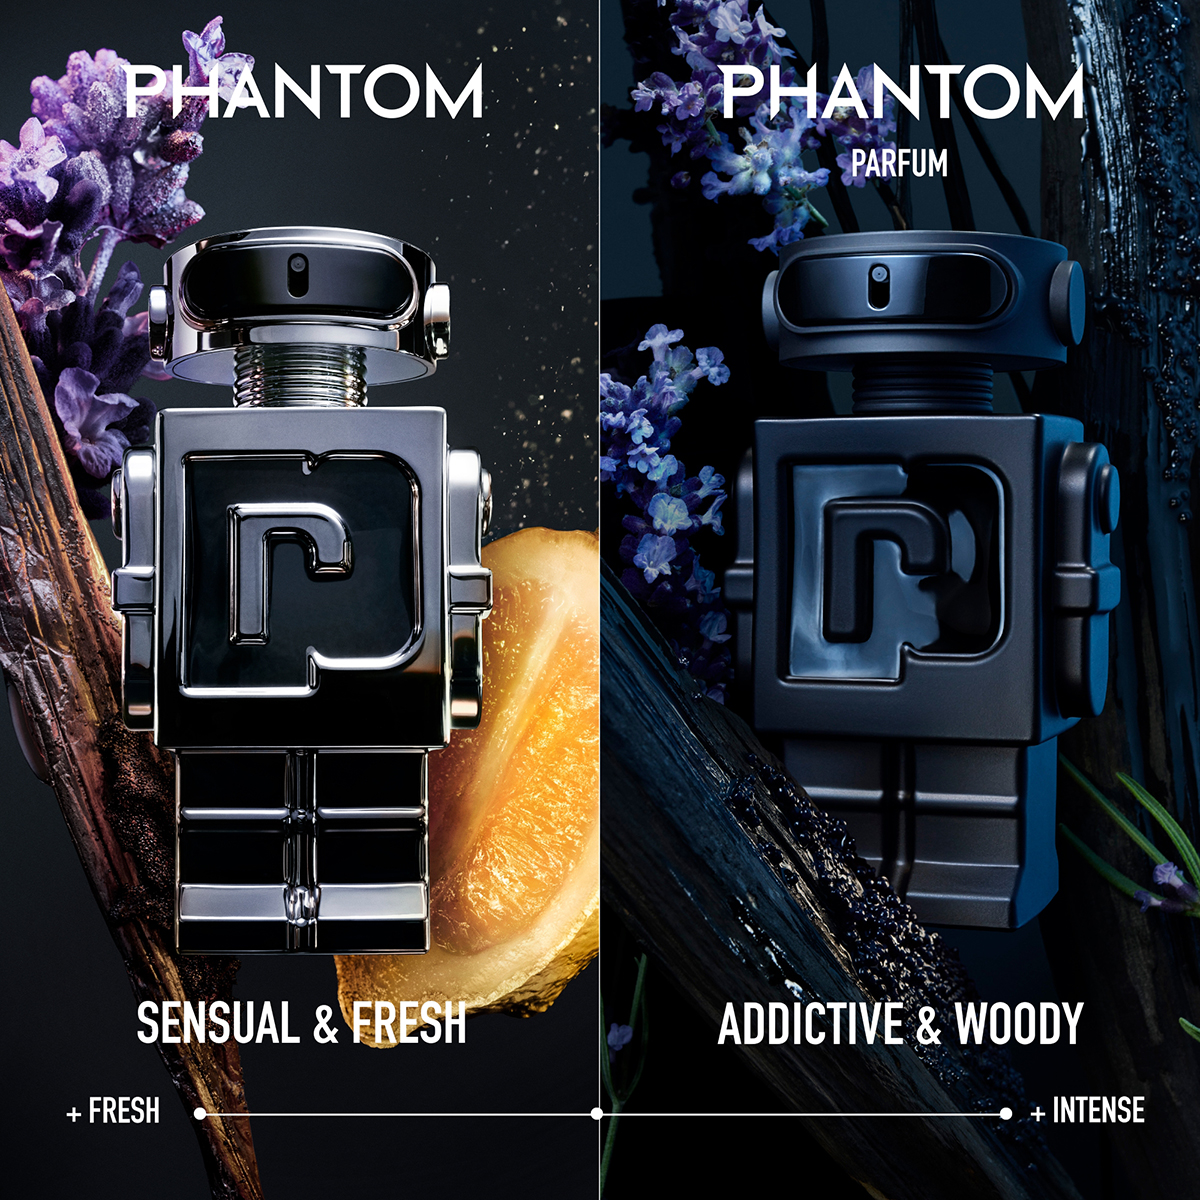 Rabanne Phantom Parfum